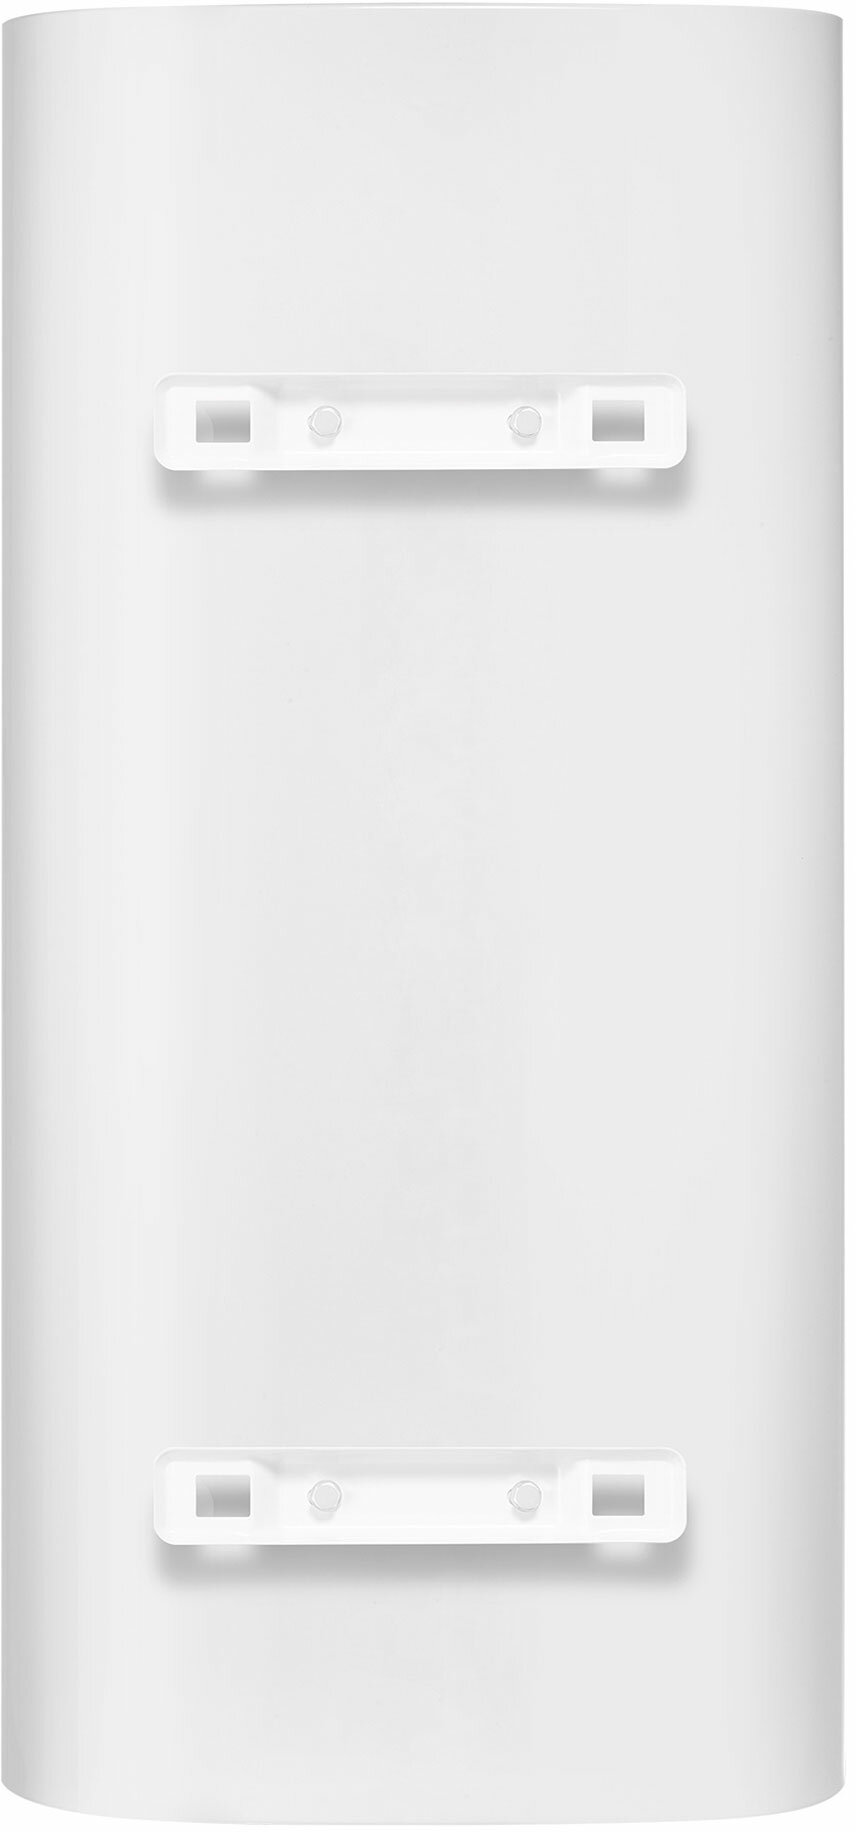 Накопительный водонагреватель Electrolux EWH 50 SmartInverter PRO электрический + акустическая колонка Electrolux Mini Beat беспроводная - фотография № 2